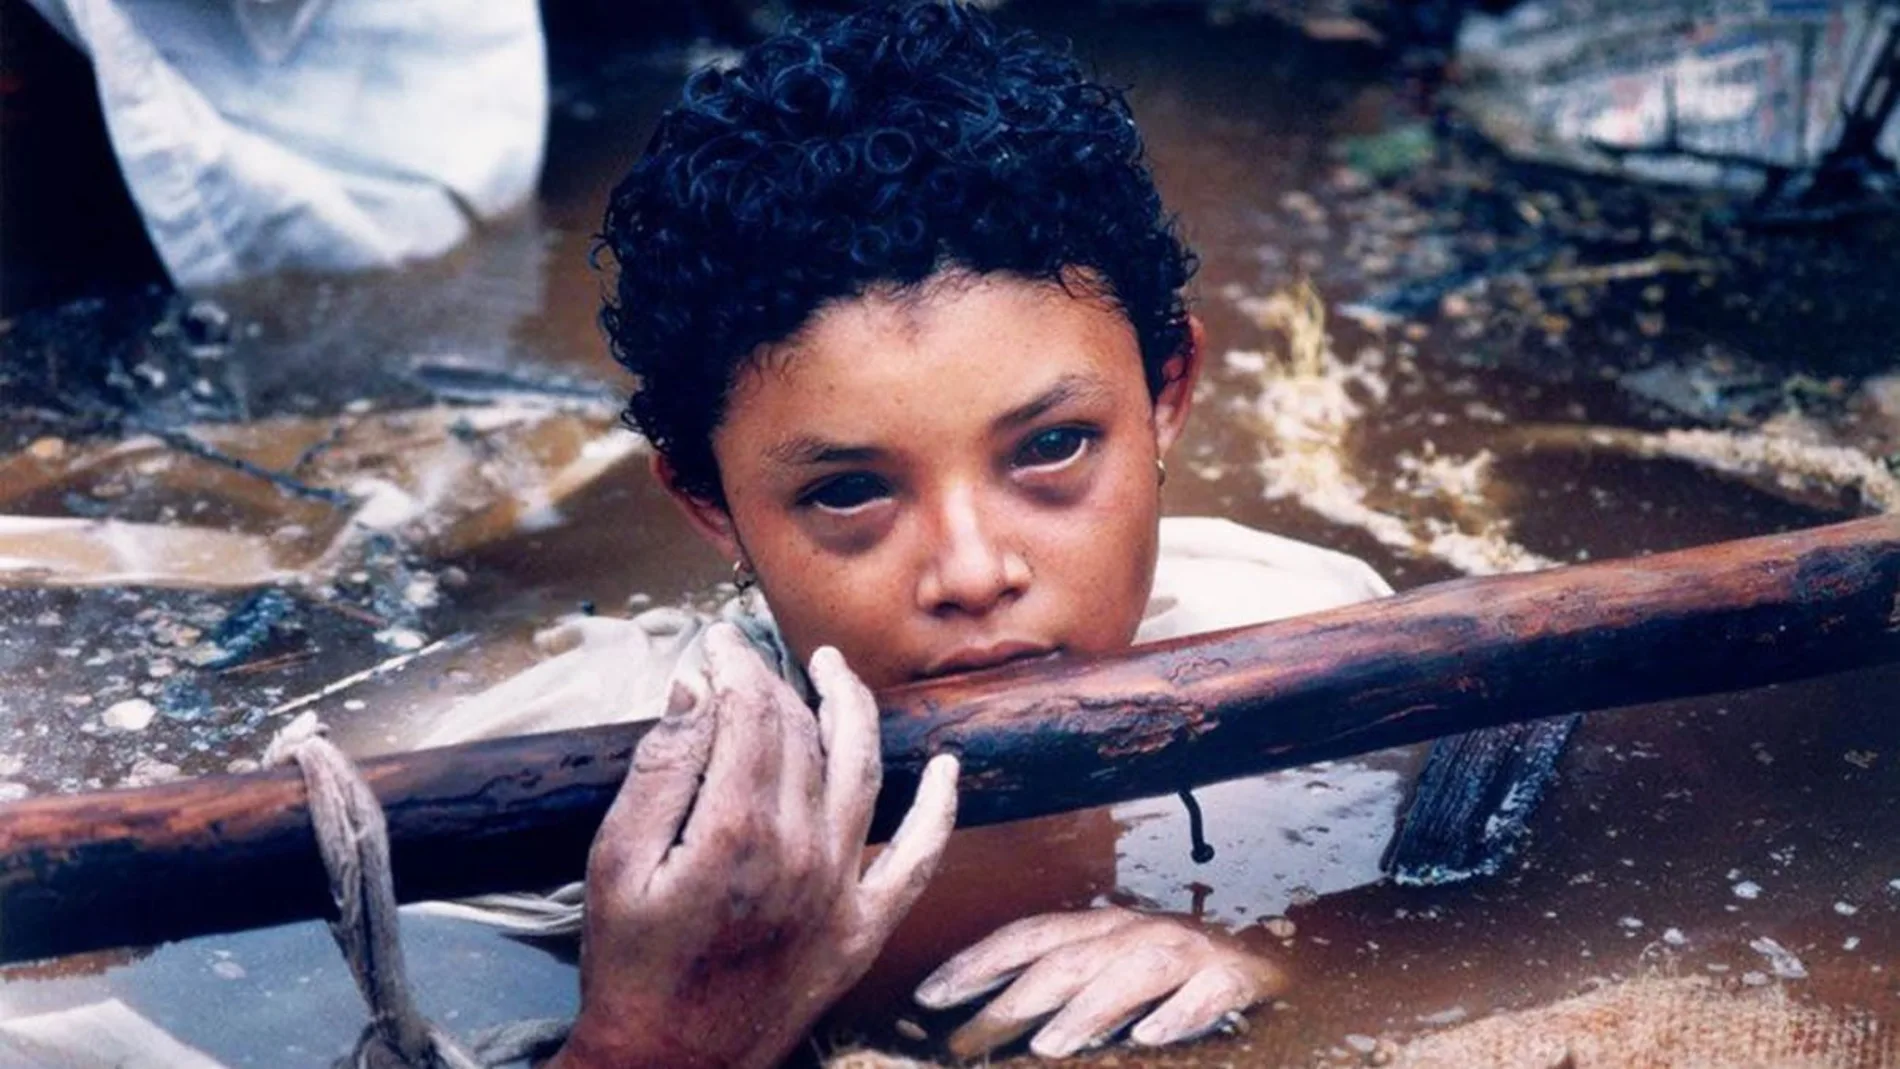 Esta foto de Omayra Sánchez ganó el premio World Press Photo en 1986 “al reflejar su propio sentimiento de impotencia”